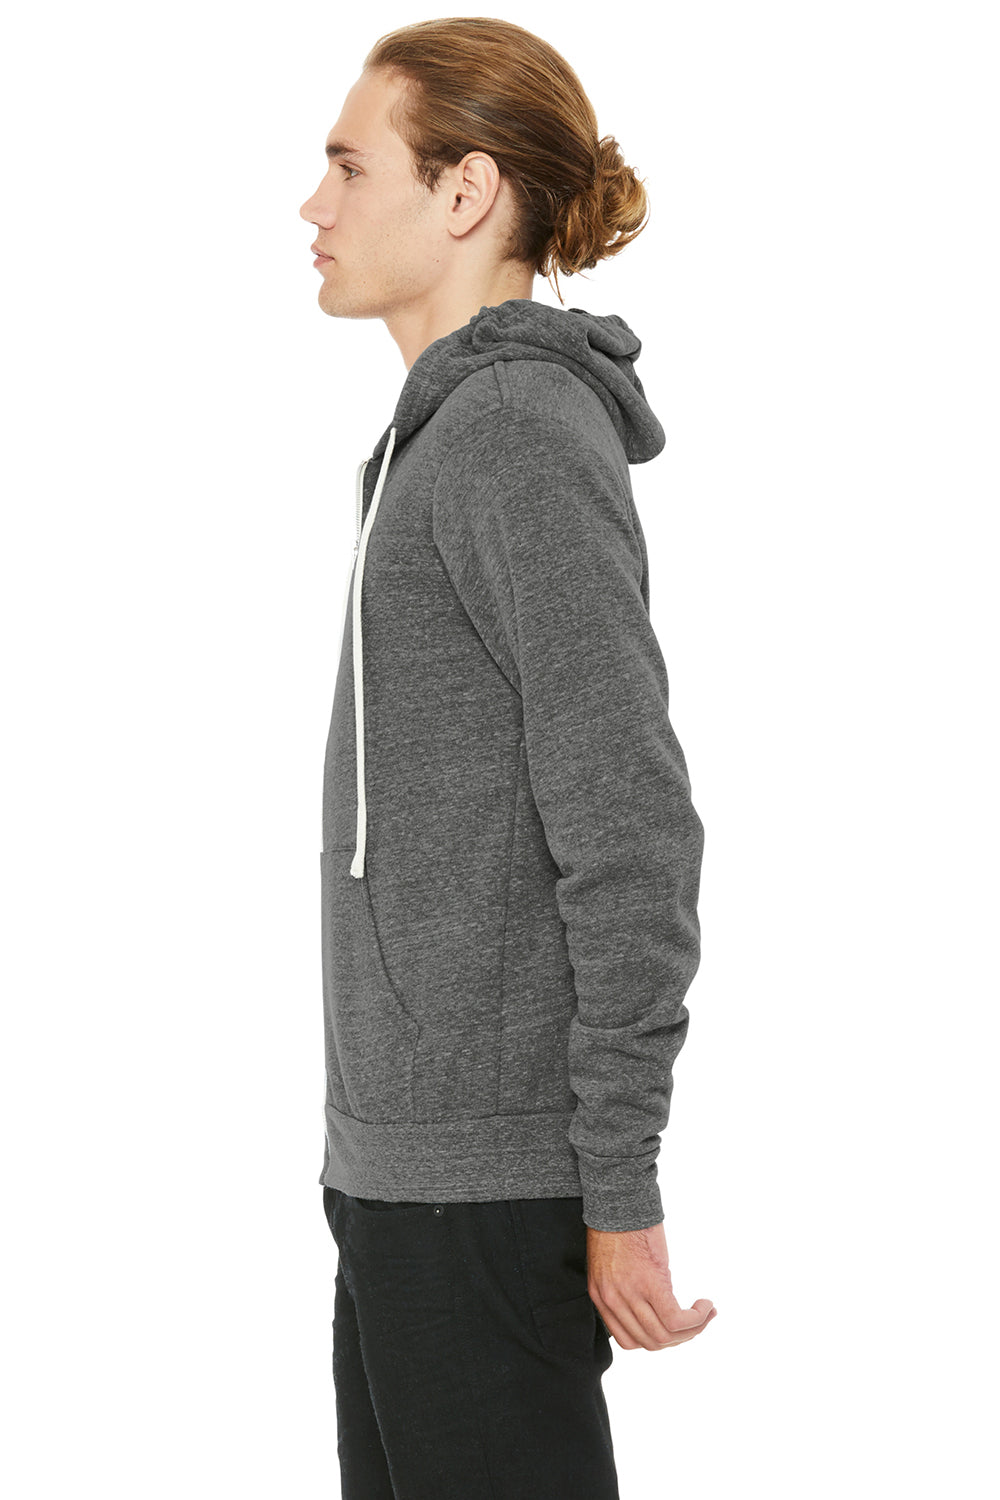 Bella + Canvas BC3909/3909 Mens Sponge Fleece Full Zip Hooded Sweatshirt Hoodie Grey Model Side